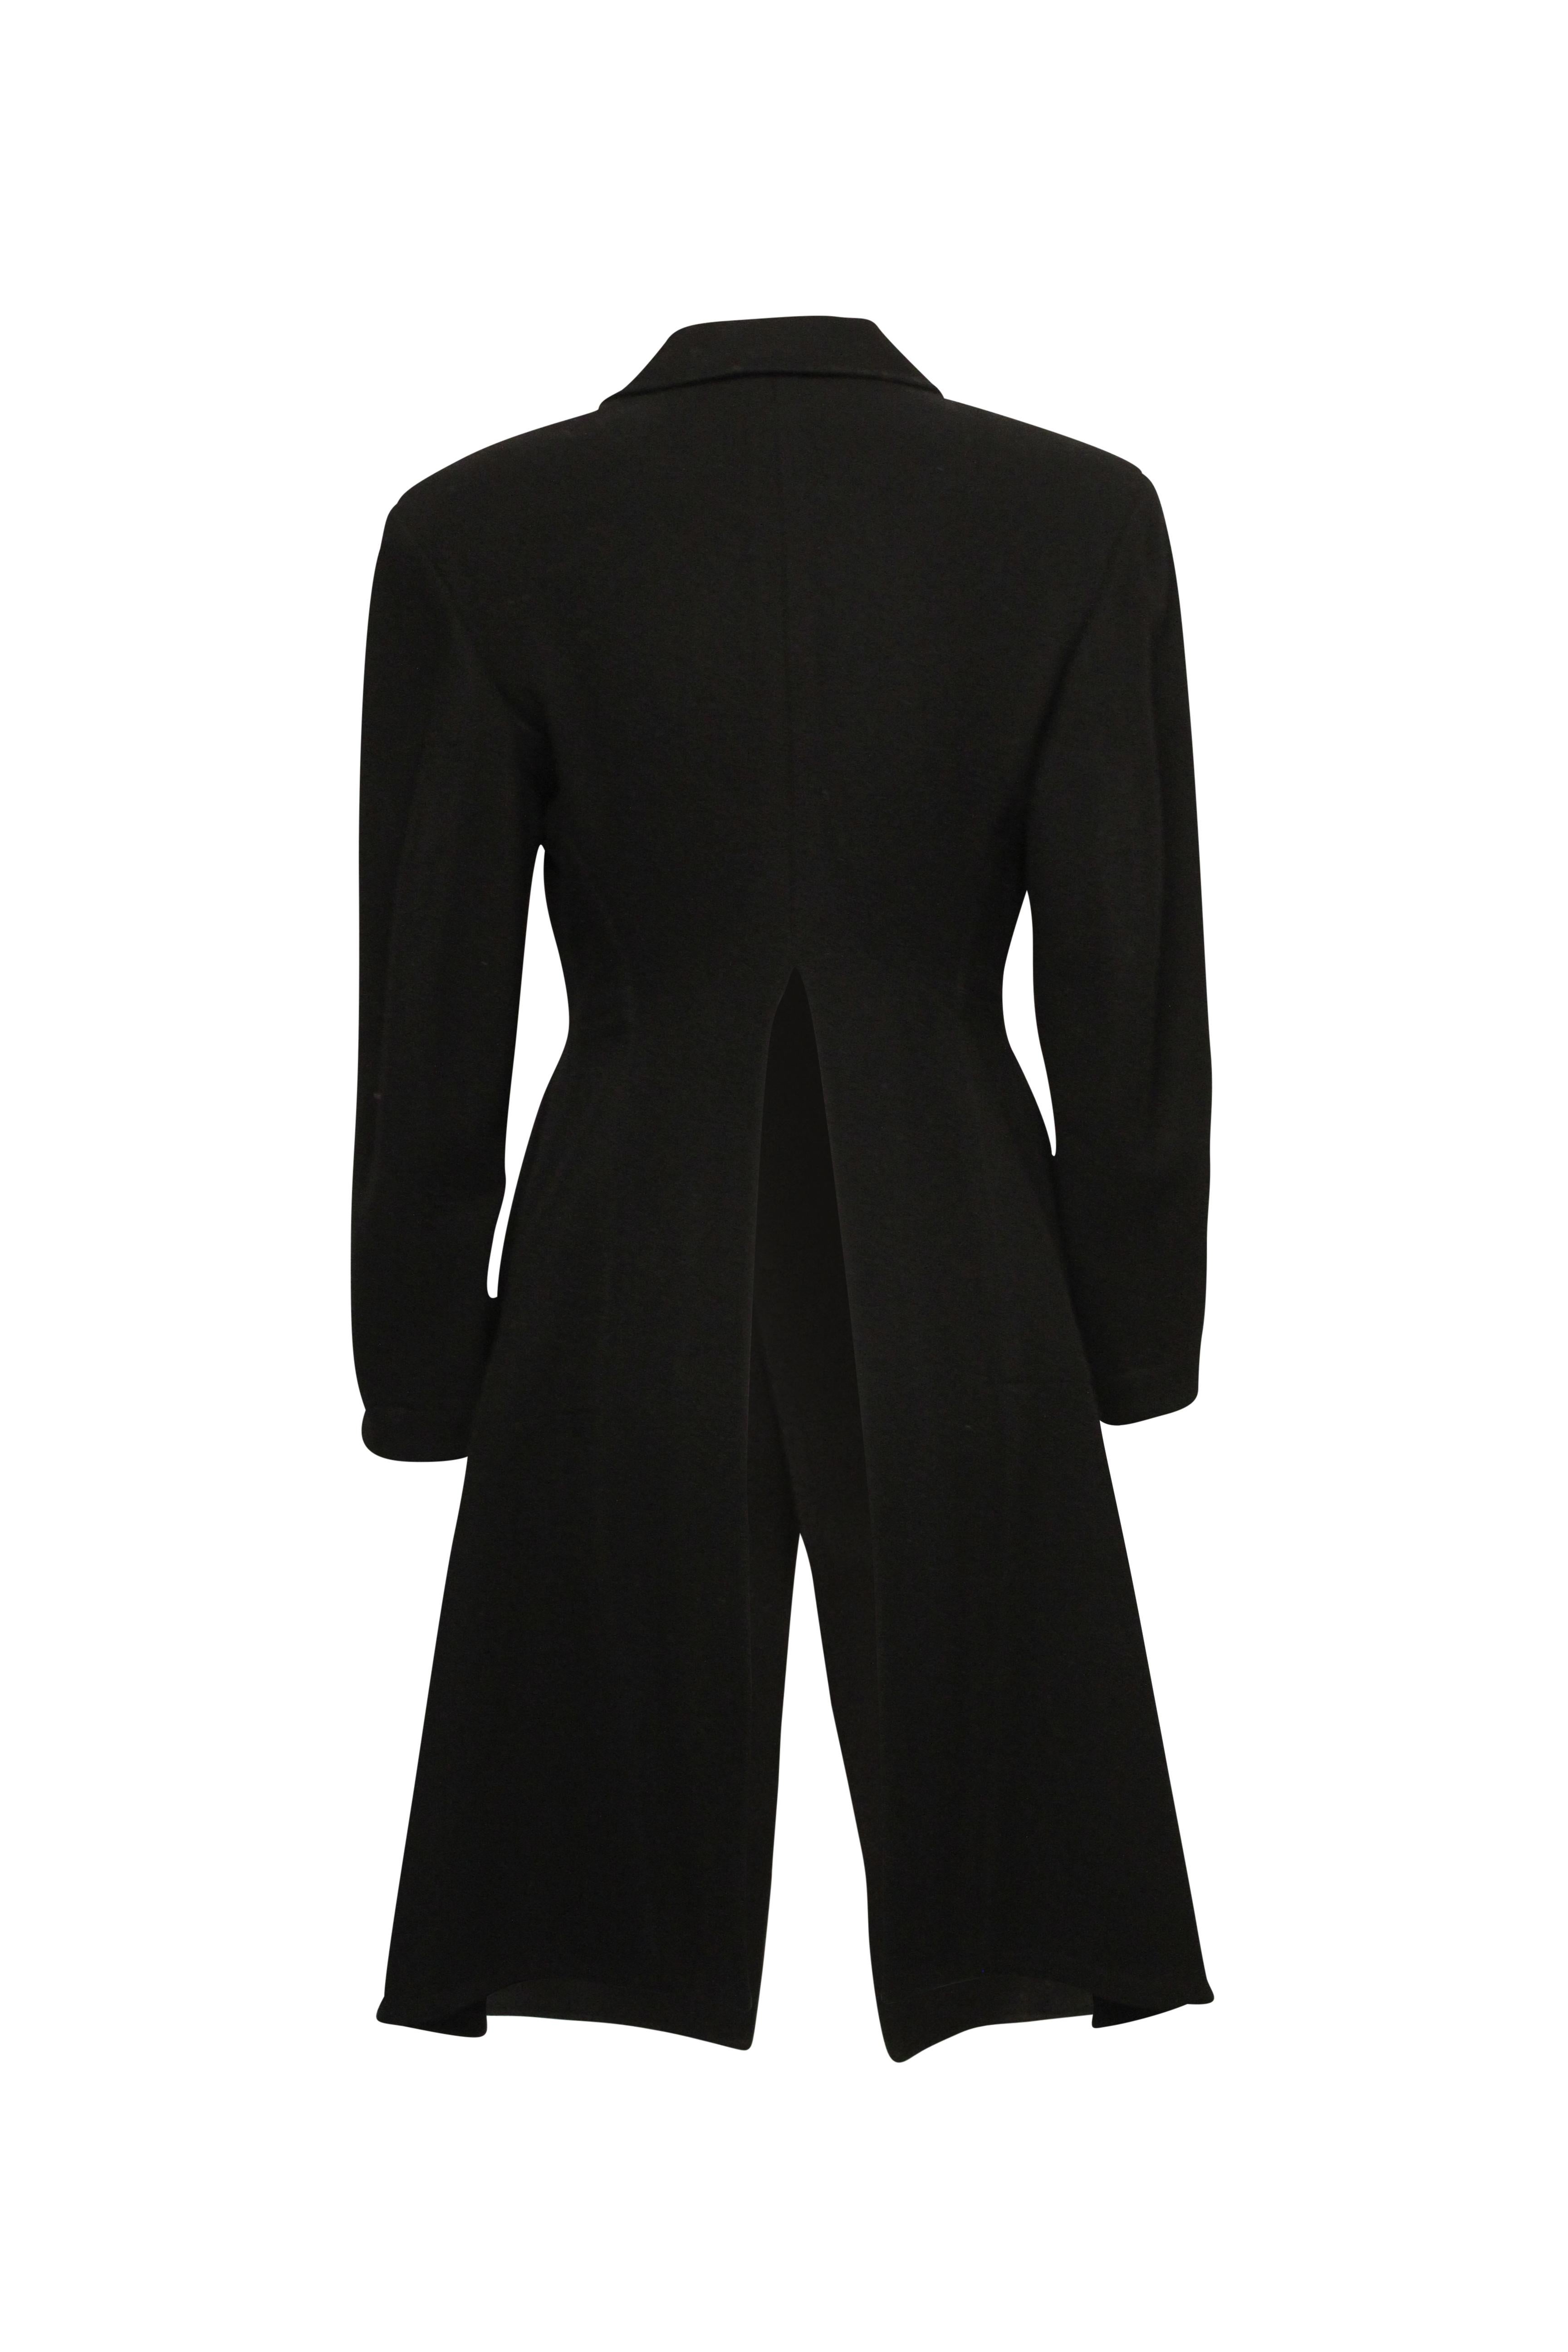 Yohji Yamamoto Coat In Fair Condition For Sale In Melbourne, Victoria